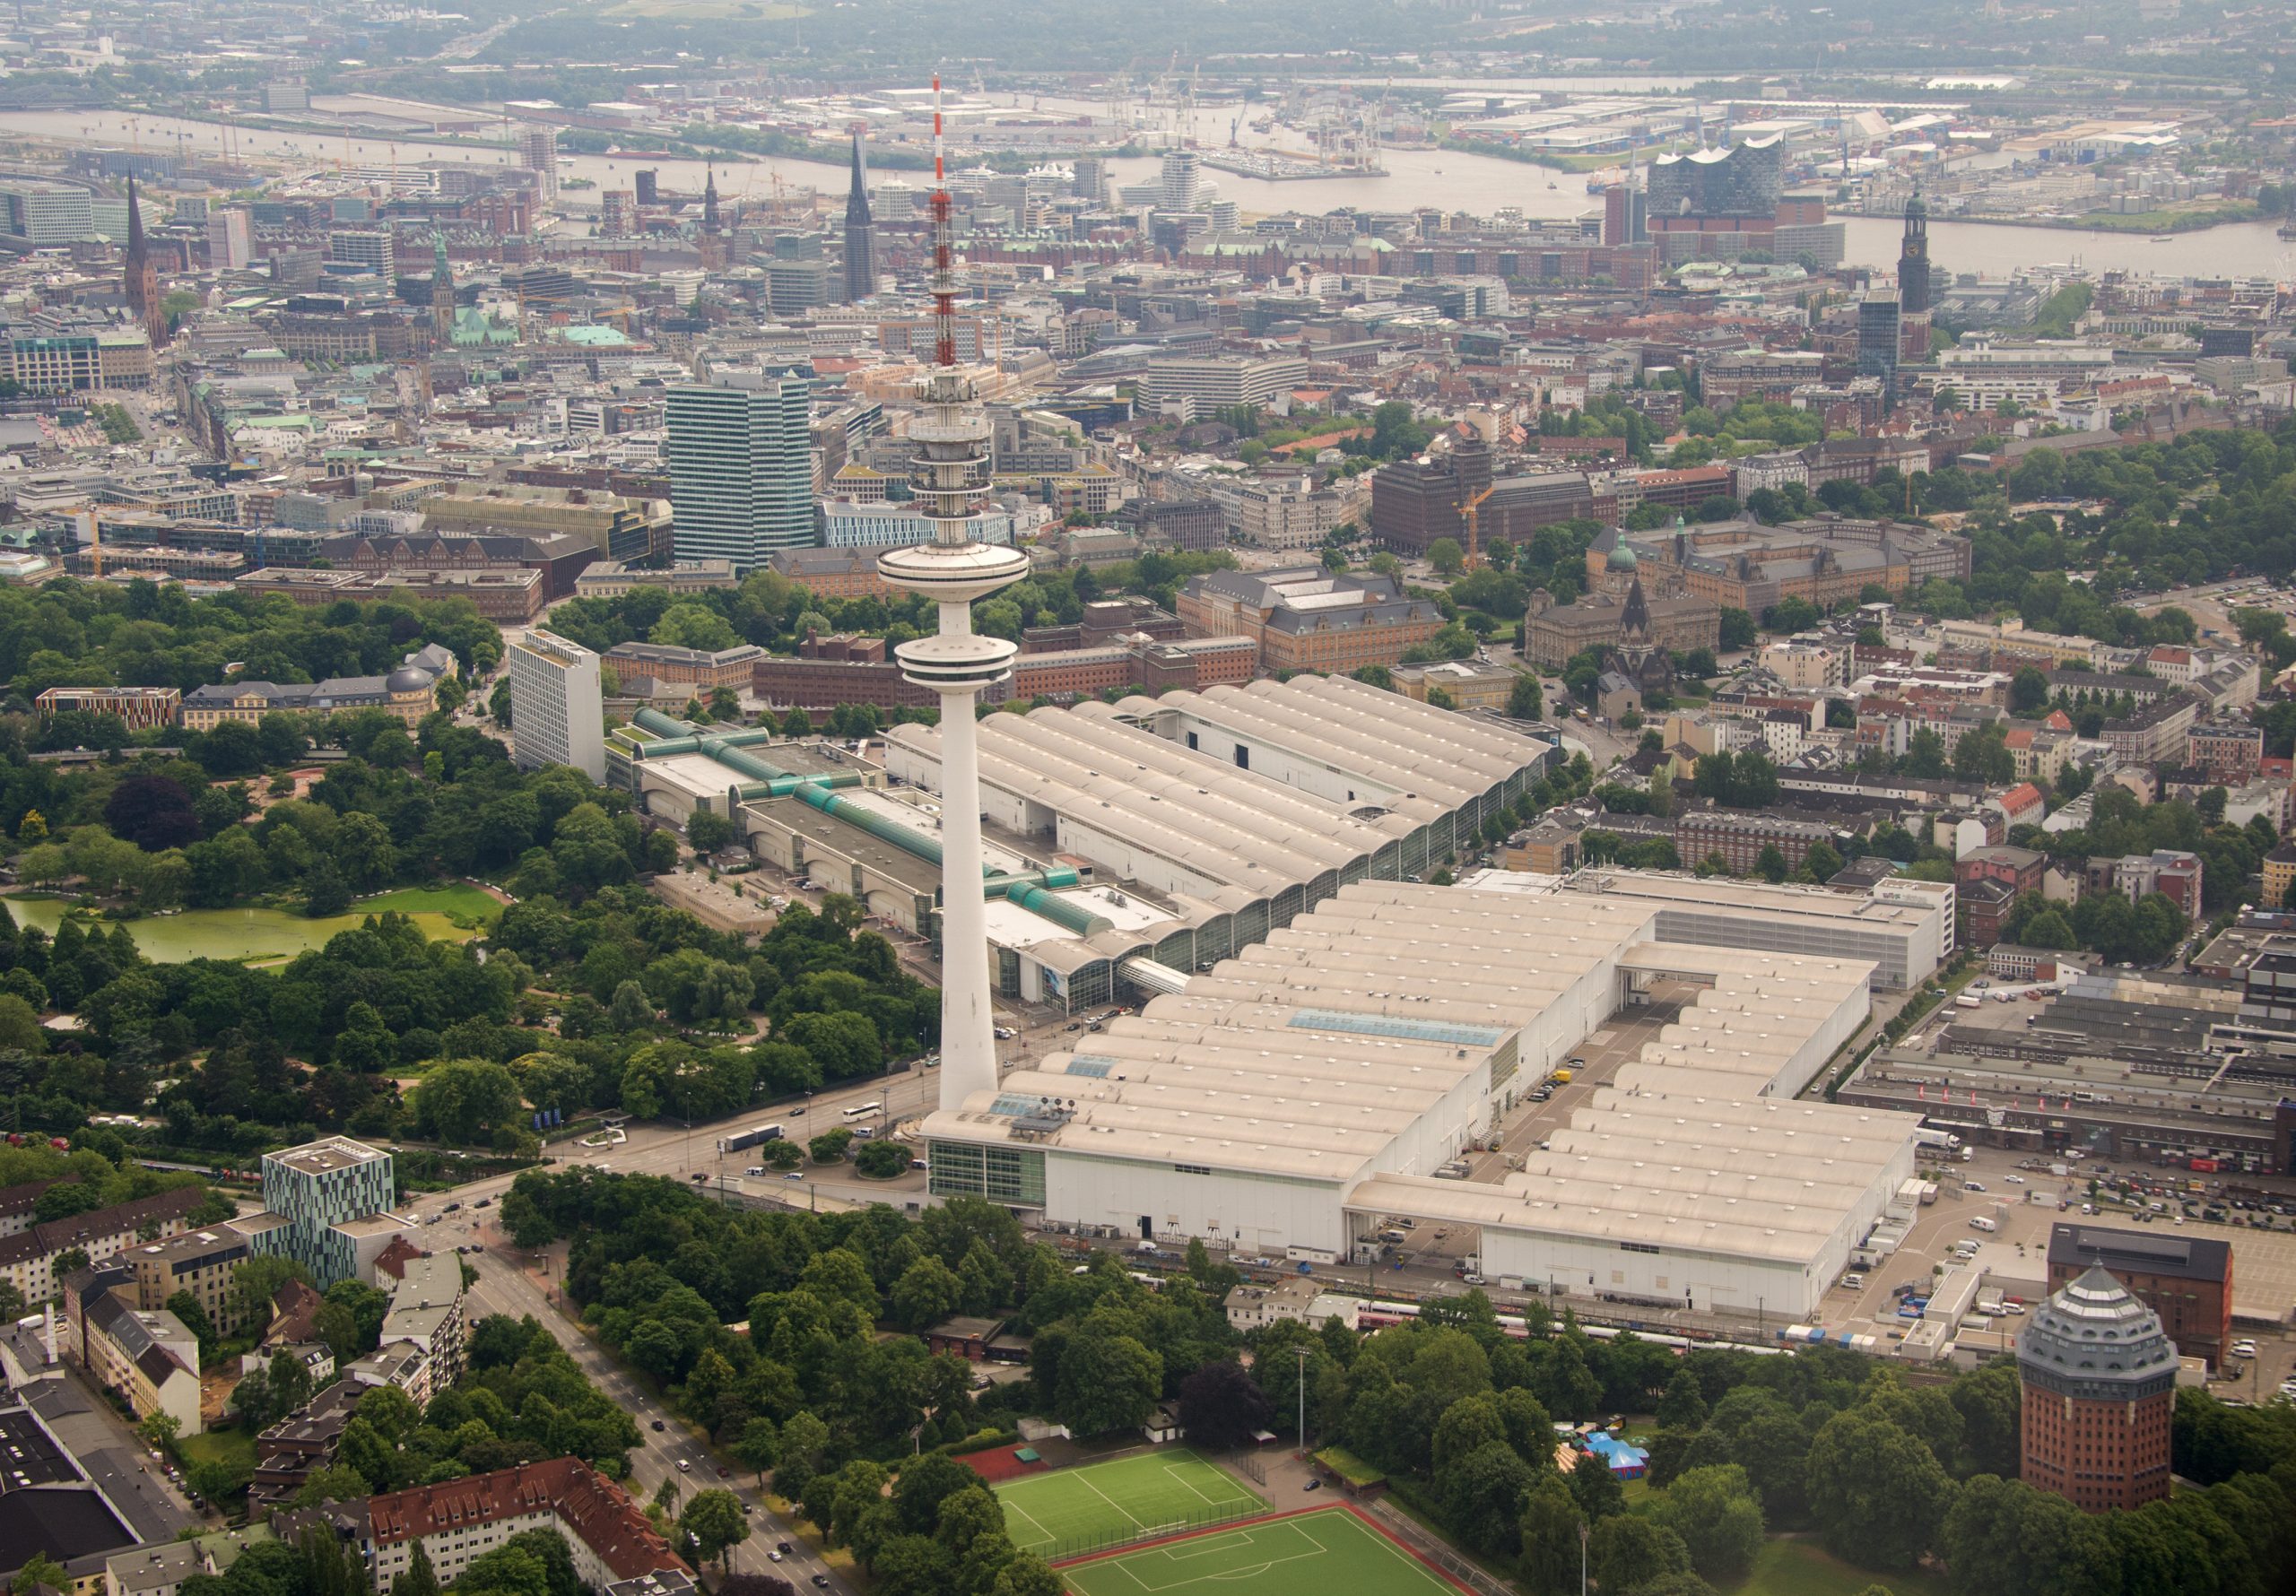 Luftbild Hamburg, Messehallen und Fernsehturm. Bald feiert hier die berühmte Kunstmesse Jubiläum